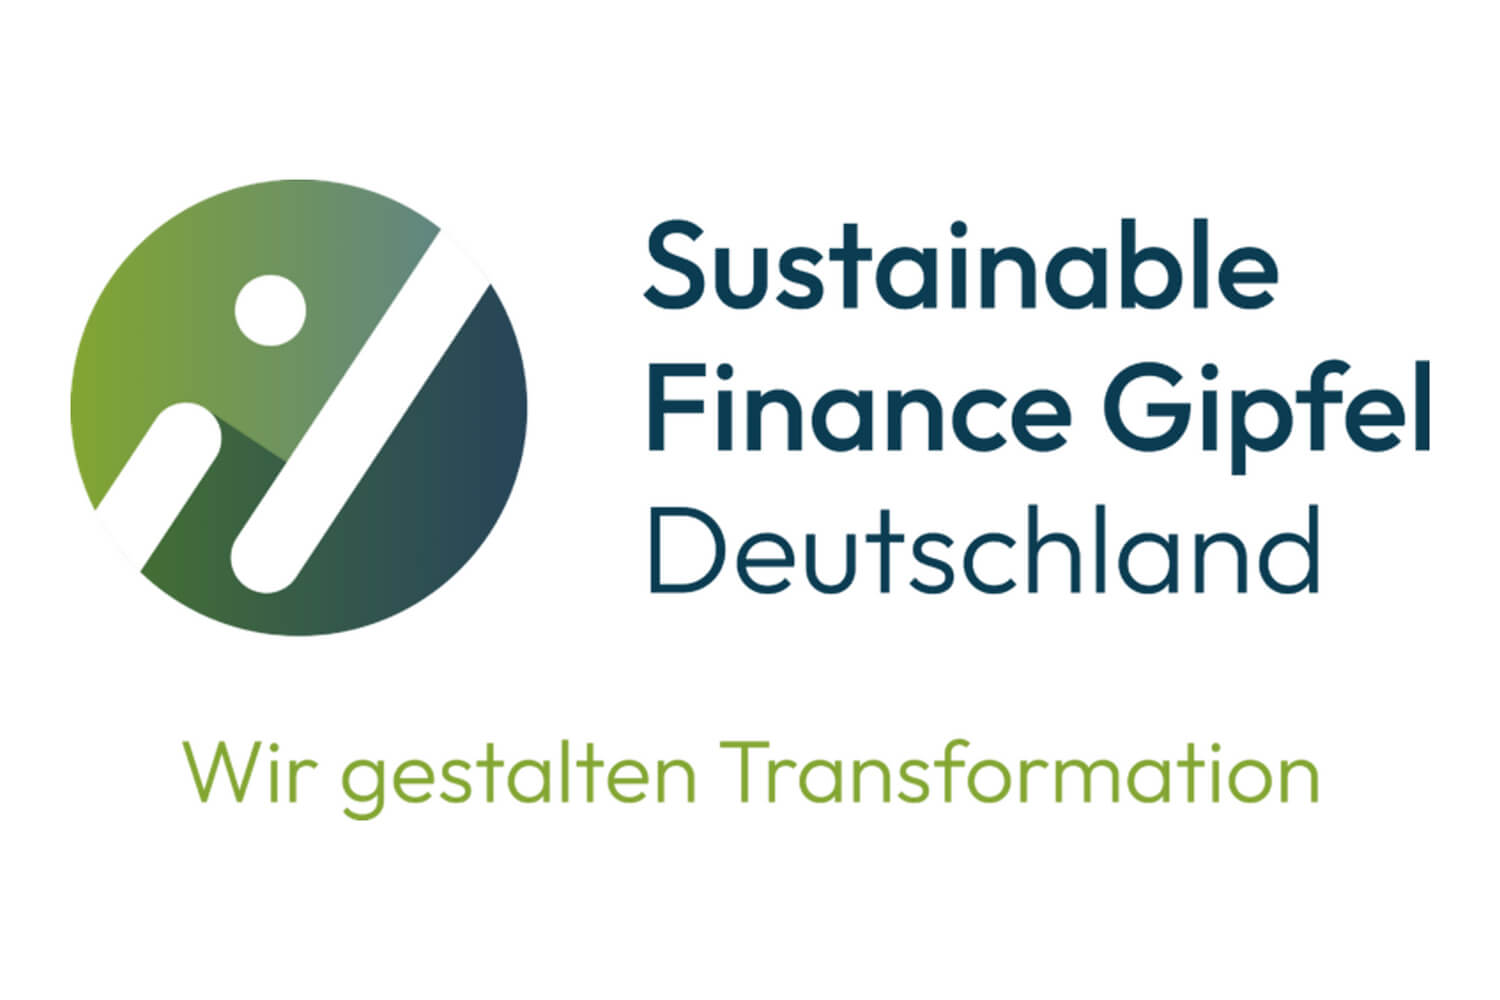 SFRG organisiert Konferenz im Rahmen des Sustainable Finance Gipfels in Hamburg